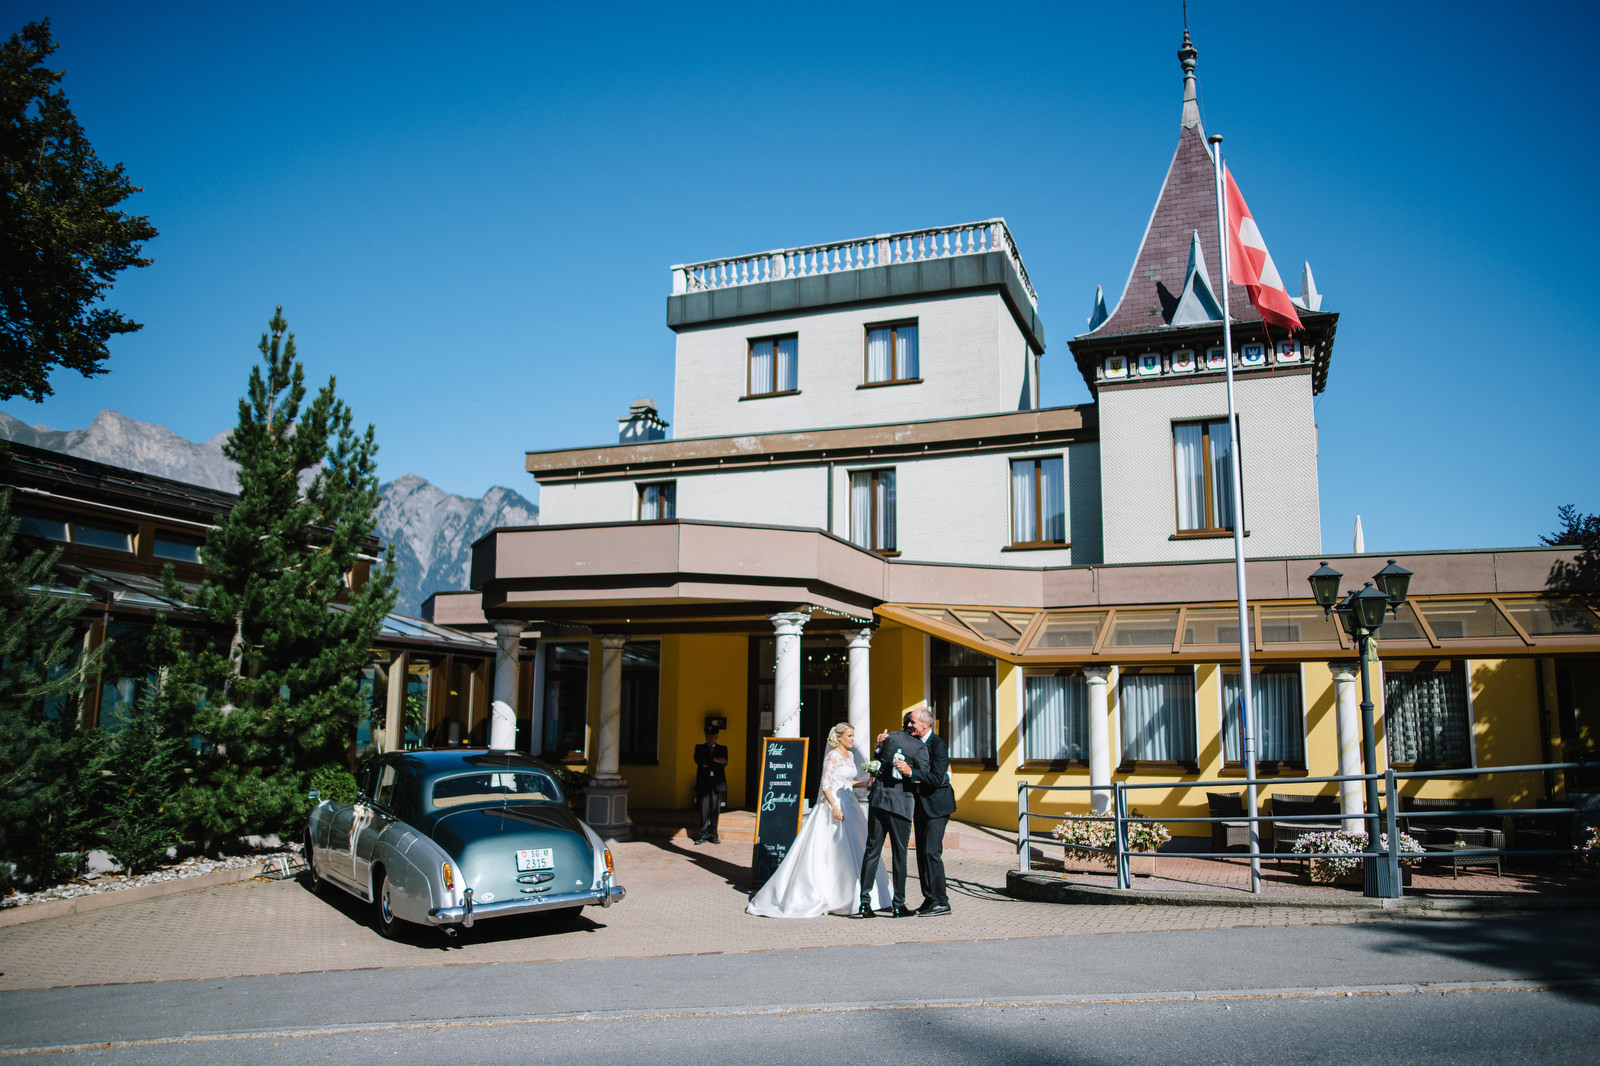 Fotograf Konstanz - Luxus Hochzeit Fotograf Grand Resort Bad Ragaz Schweiz Lichtenstein 104 - Destination wedding at the Grand Resort Bad Ragaz, Swiss  - 167 -